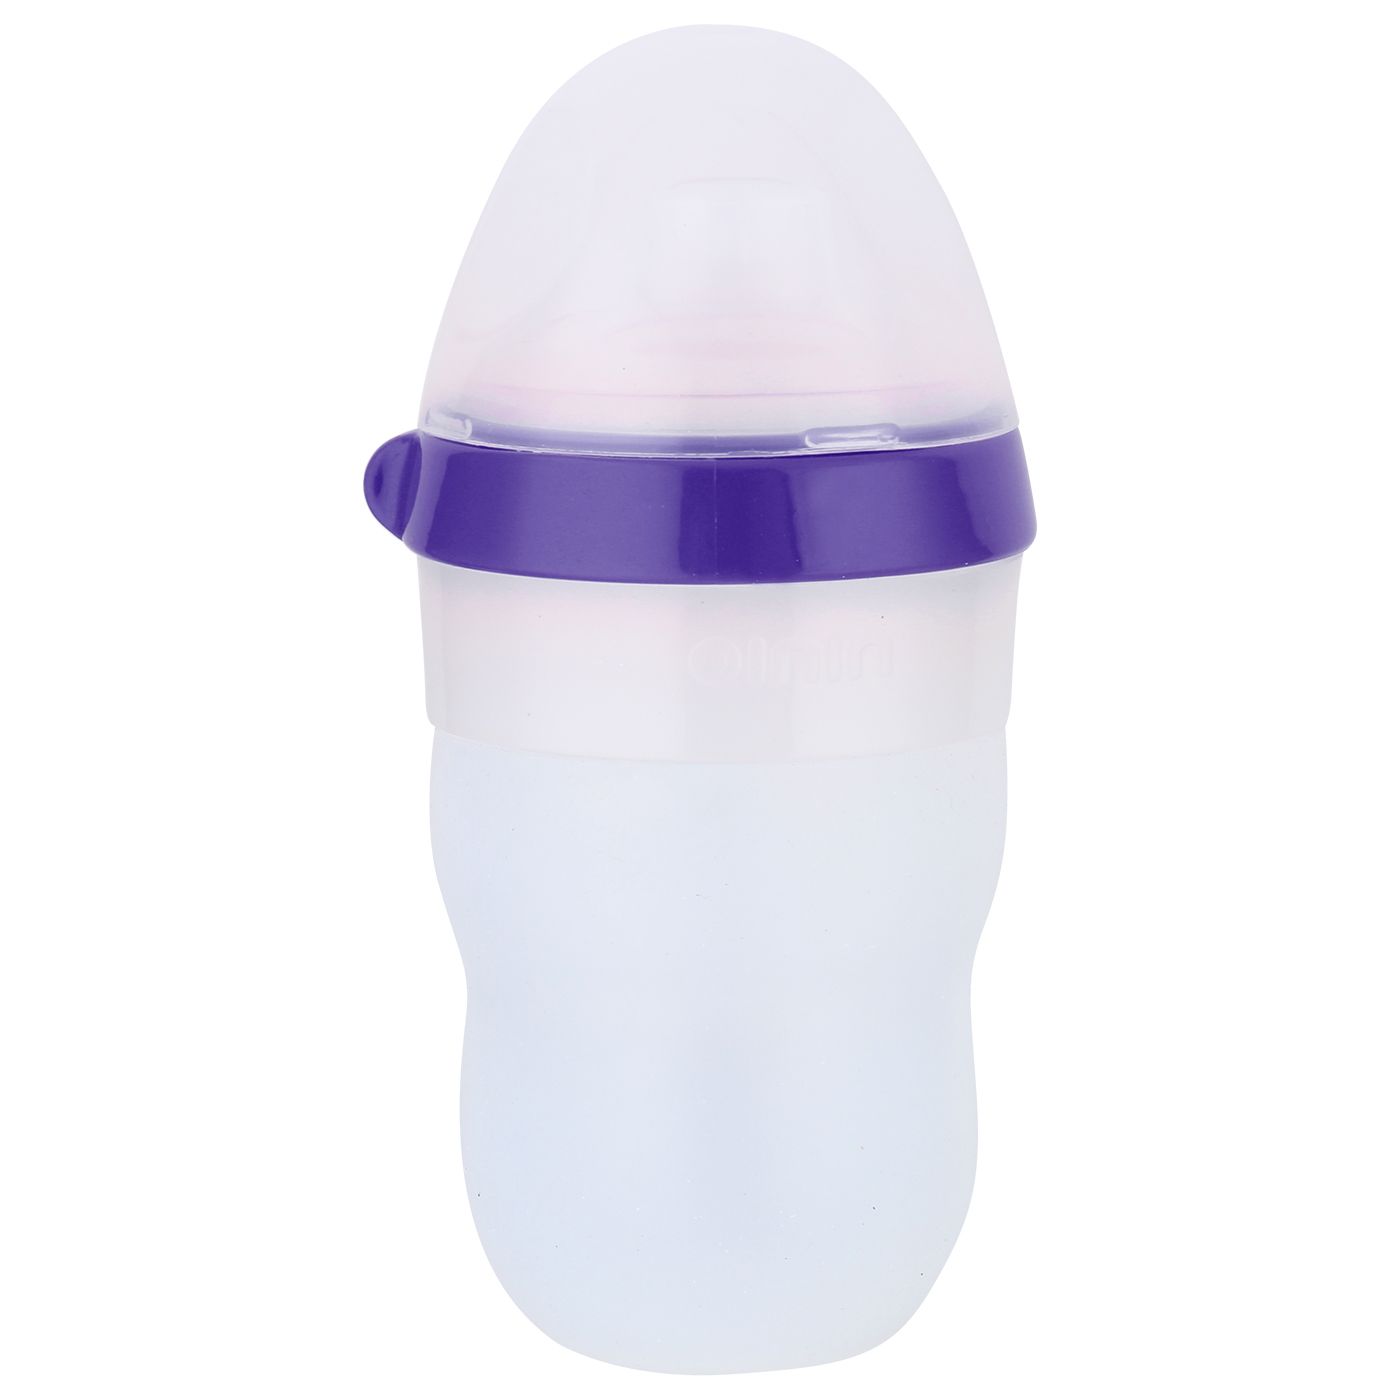 Ninio Non-Drip Silicone Spout Cup 7oz Purple - 1